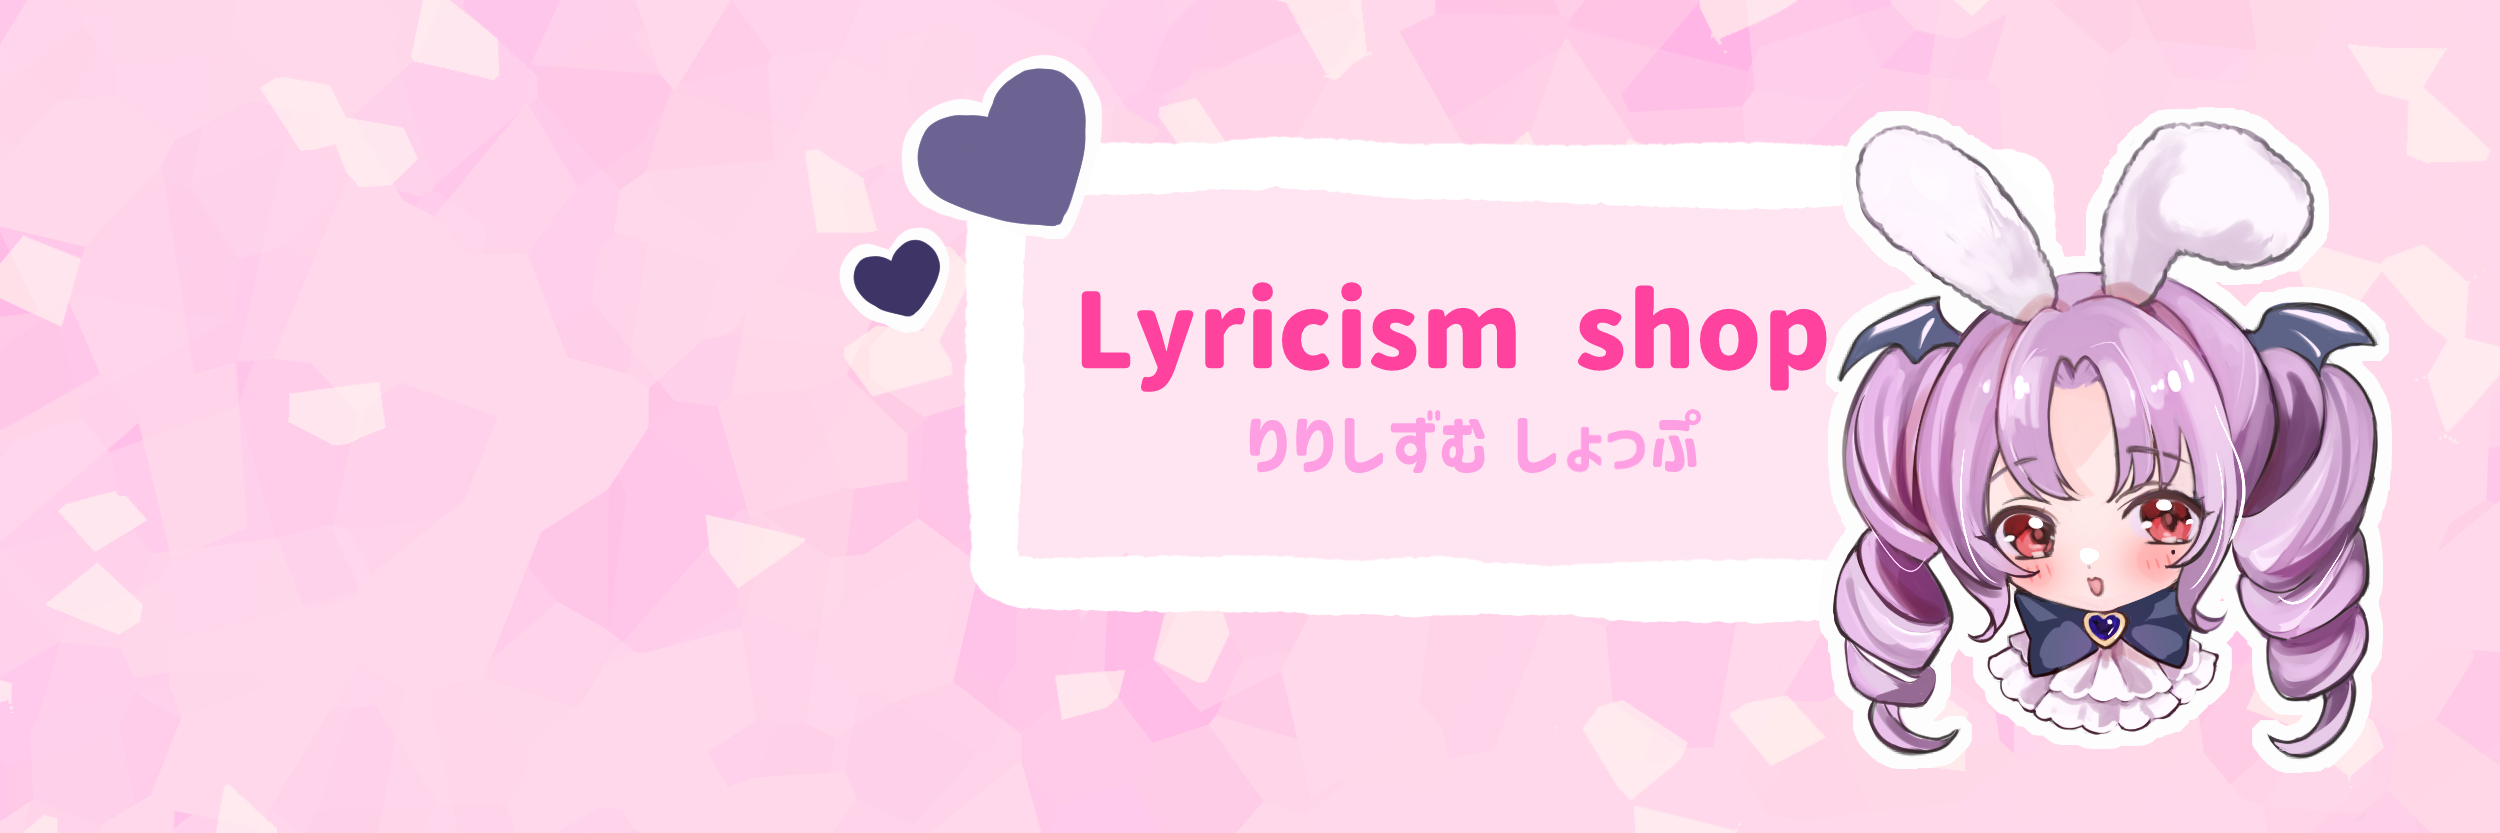 Lyricism shop